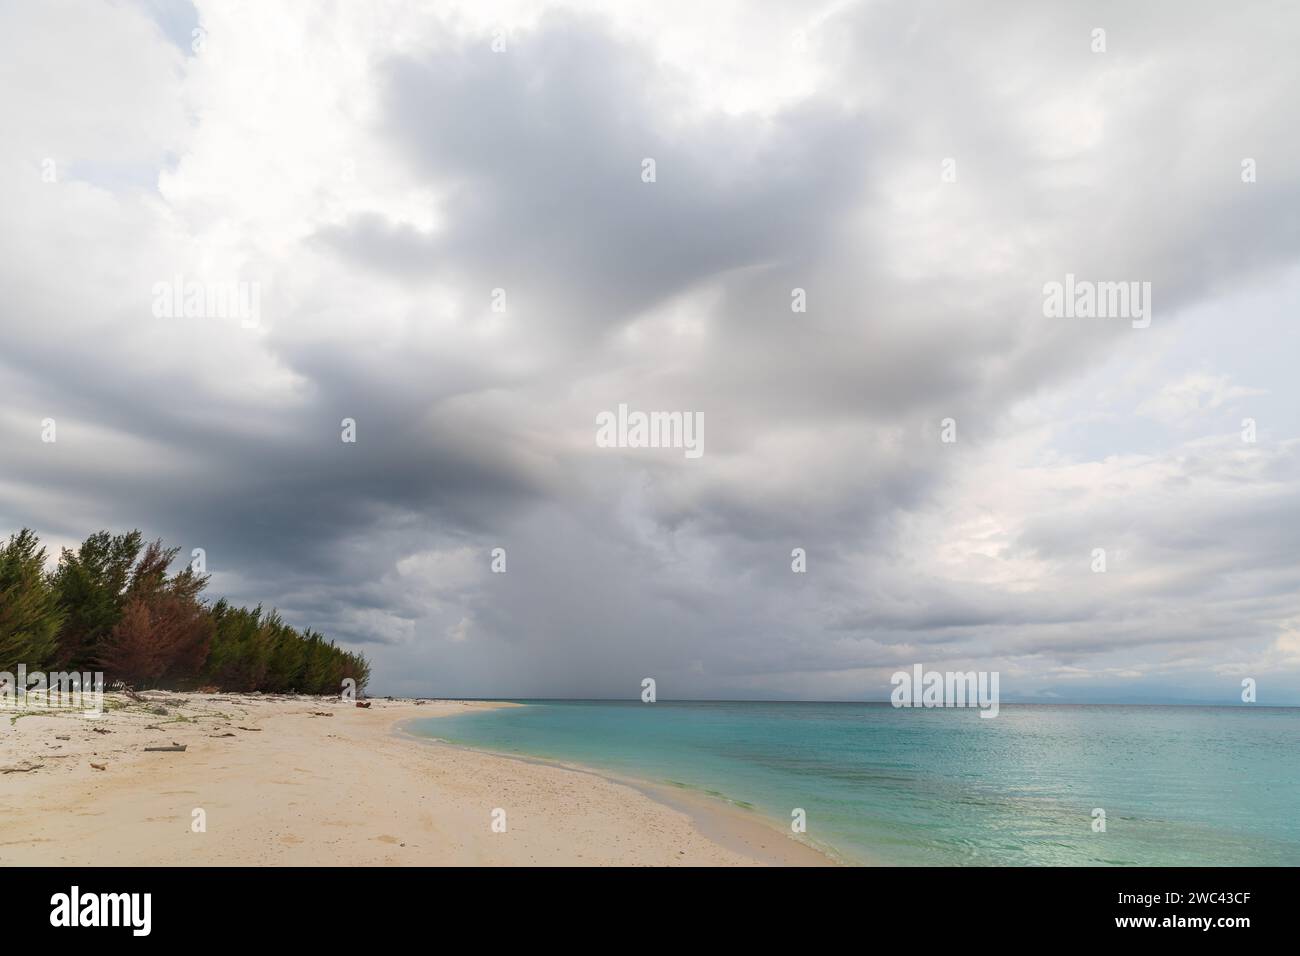 Les nuages de tempête dégageant pendent au-dessus d'une plage tropicale déserte Banque D'Images